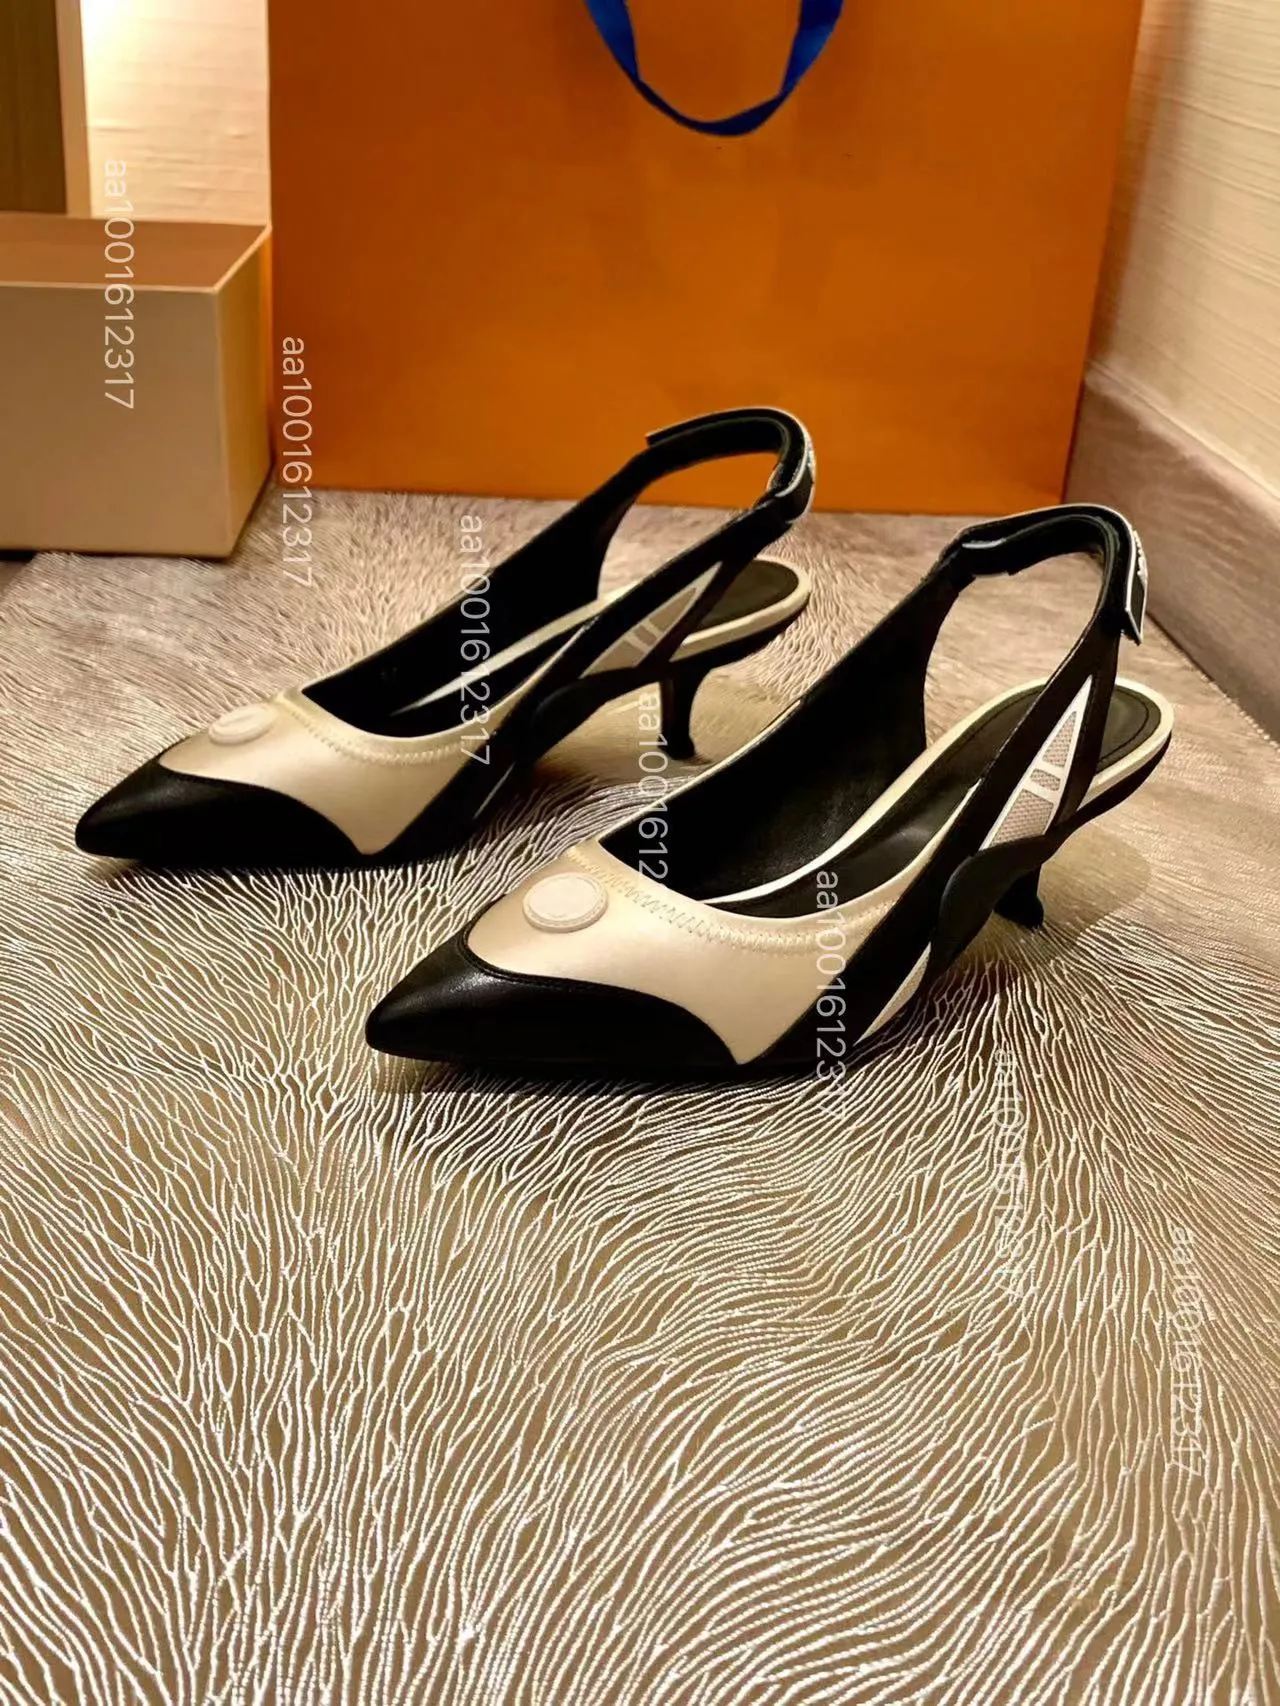 Buzağı Patent Deri Slingback Pompalar Metal Tonya Taşıyılmış Sandalet Yavru Kedi Topuk Kadınlar Lüks Tasarımcı Ayak Ayak Parçası Ayakkabılar Fabrika Ayakkabı 35-41